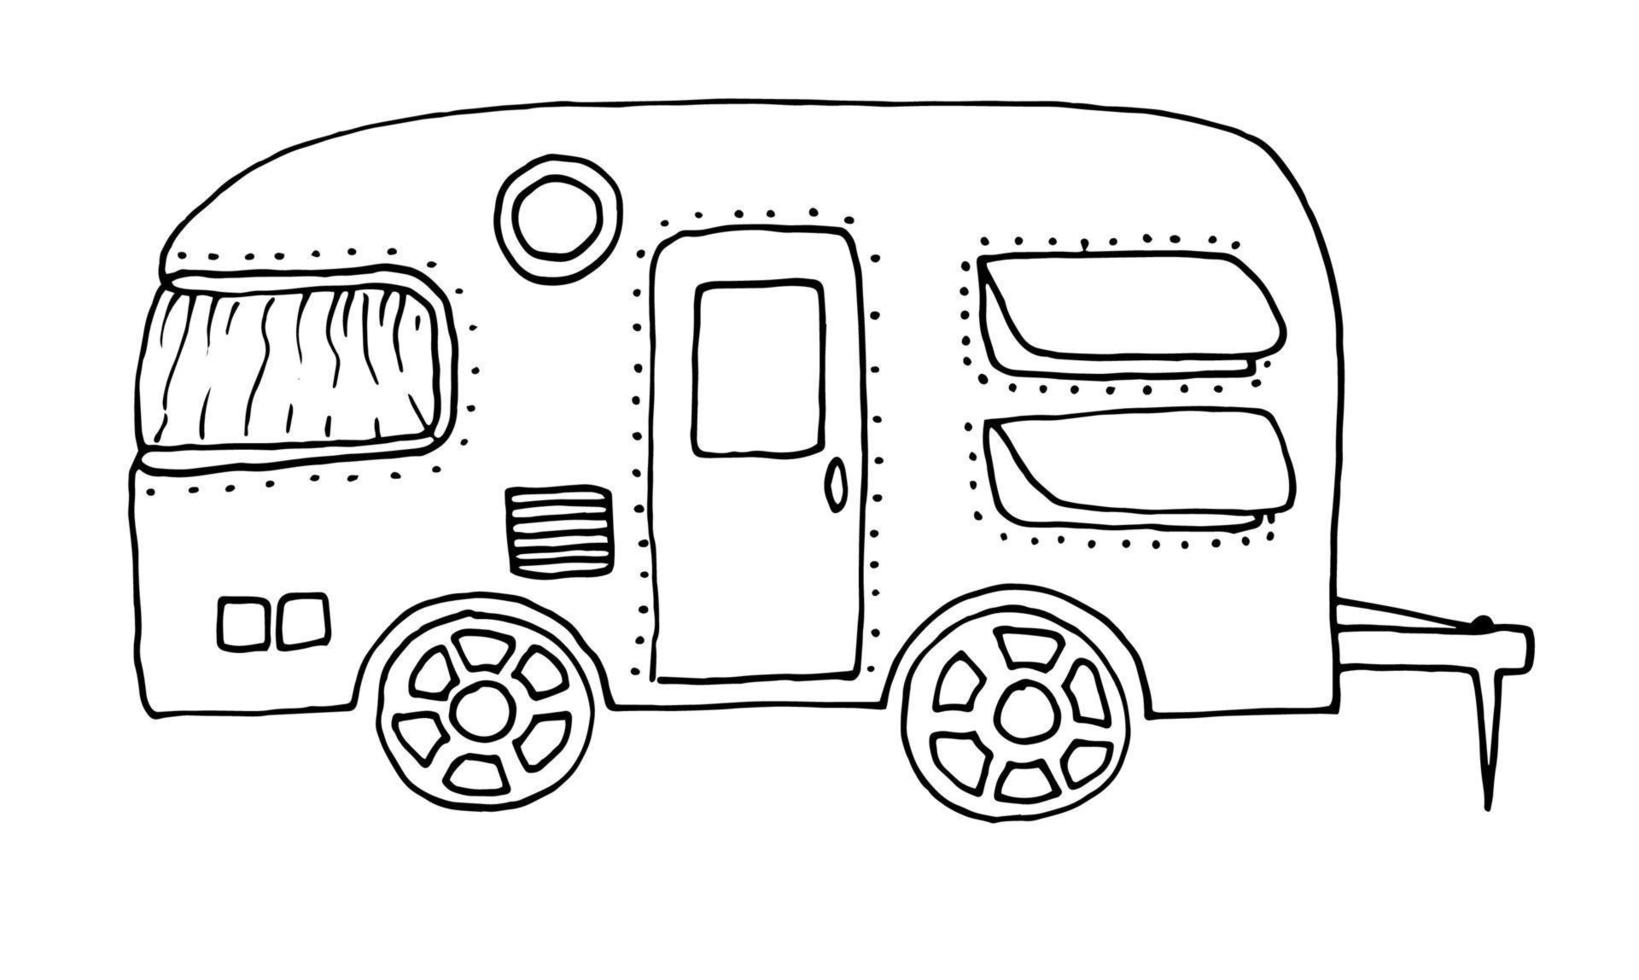 camper, vehículo recreativo, vehículos, camper, furgonetas, caravanas. ilustración vectorial dibujada a mano en estilo de contorno garabato vector